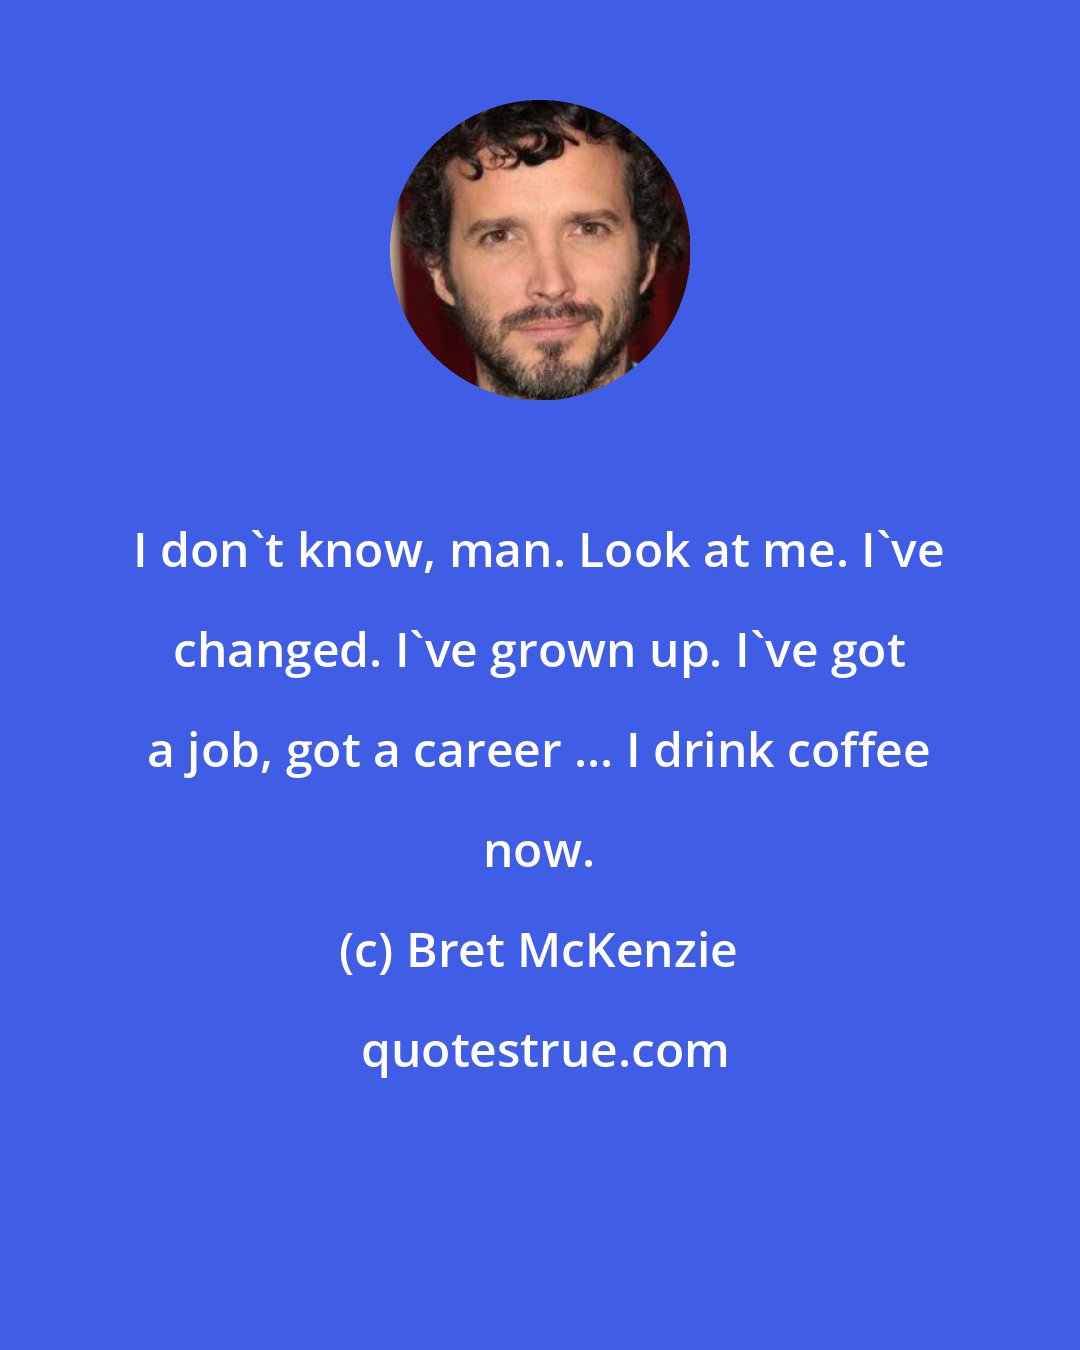 Bret McKenzie: I don't know, man. Look at me. I've changed. I've grown up. I've got a job, got a career ... I drink coffee now.